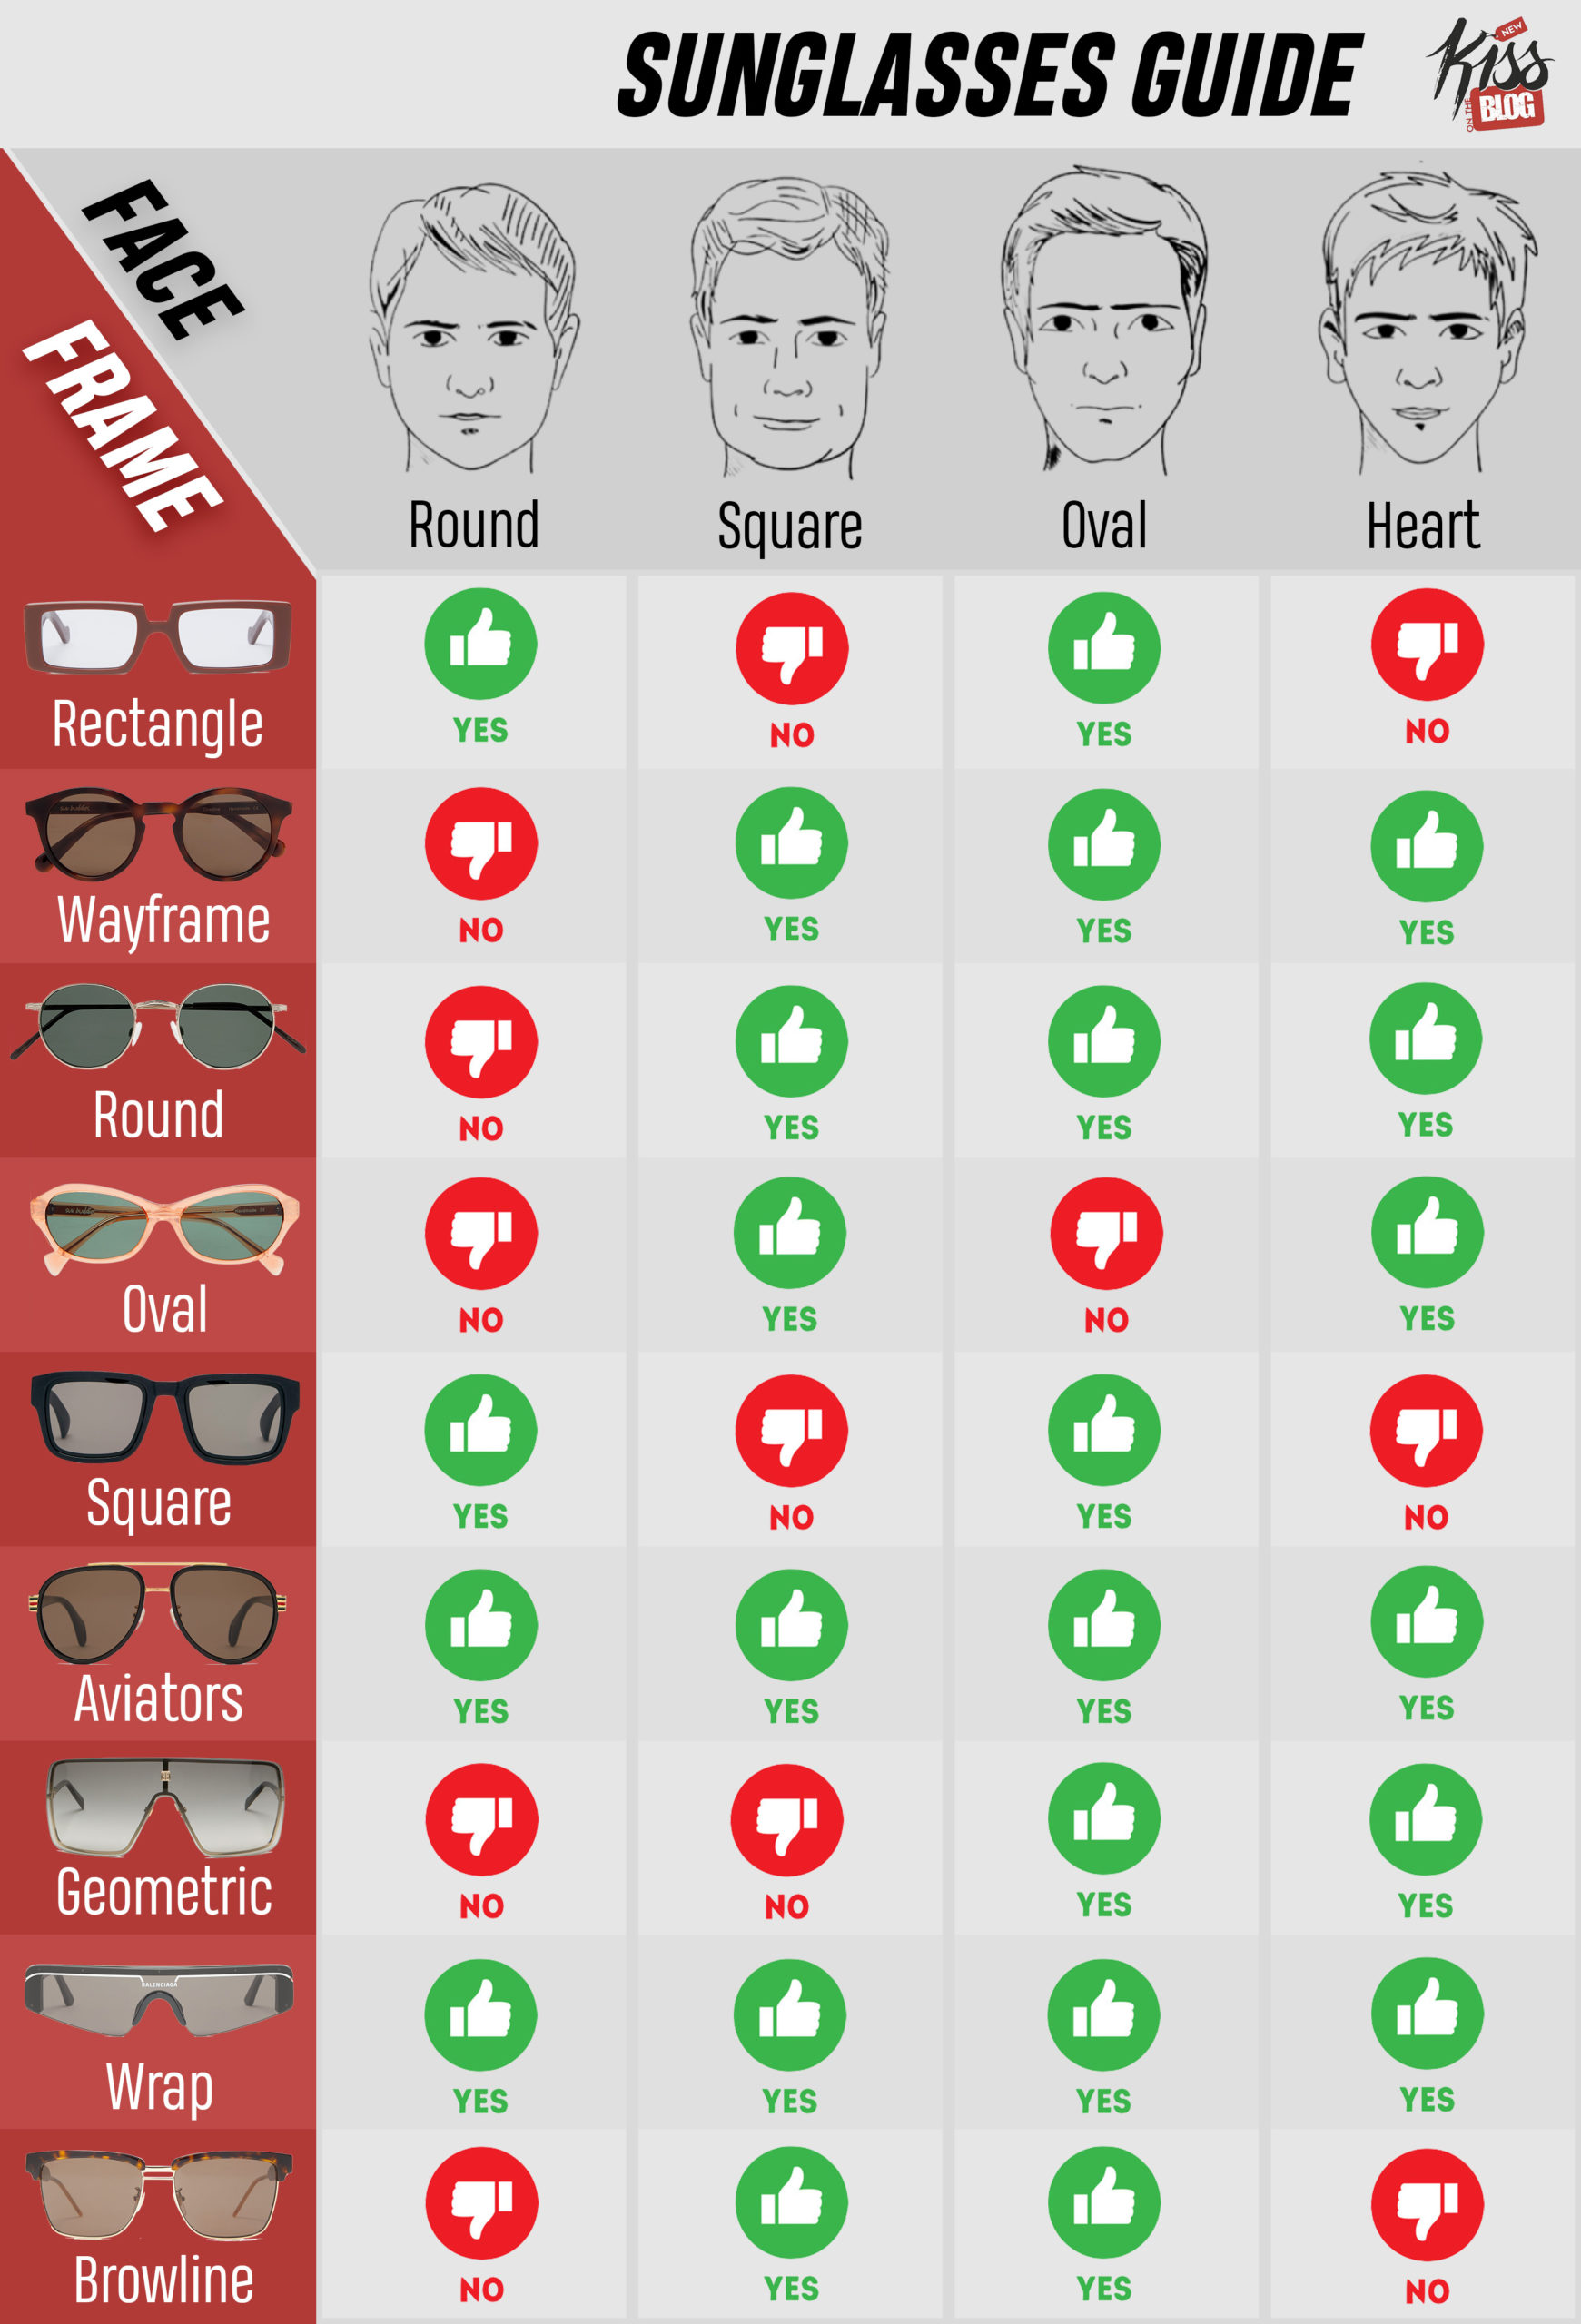 Sonnenbrillen Guide 2020: Welche Sonnenbrille passt zu meinem Gesicht?